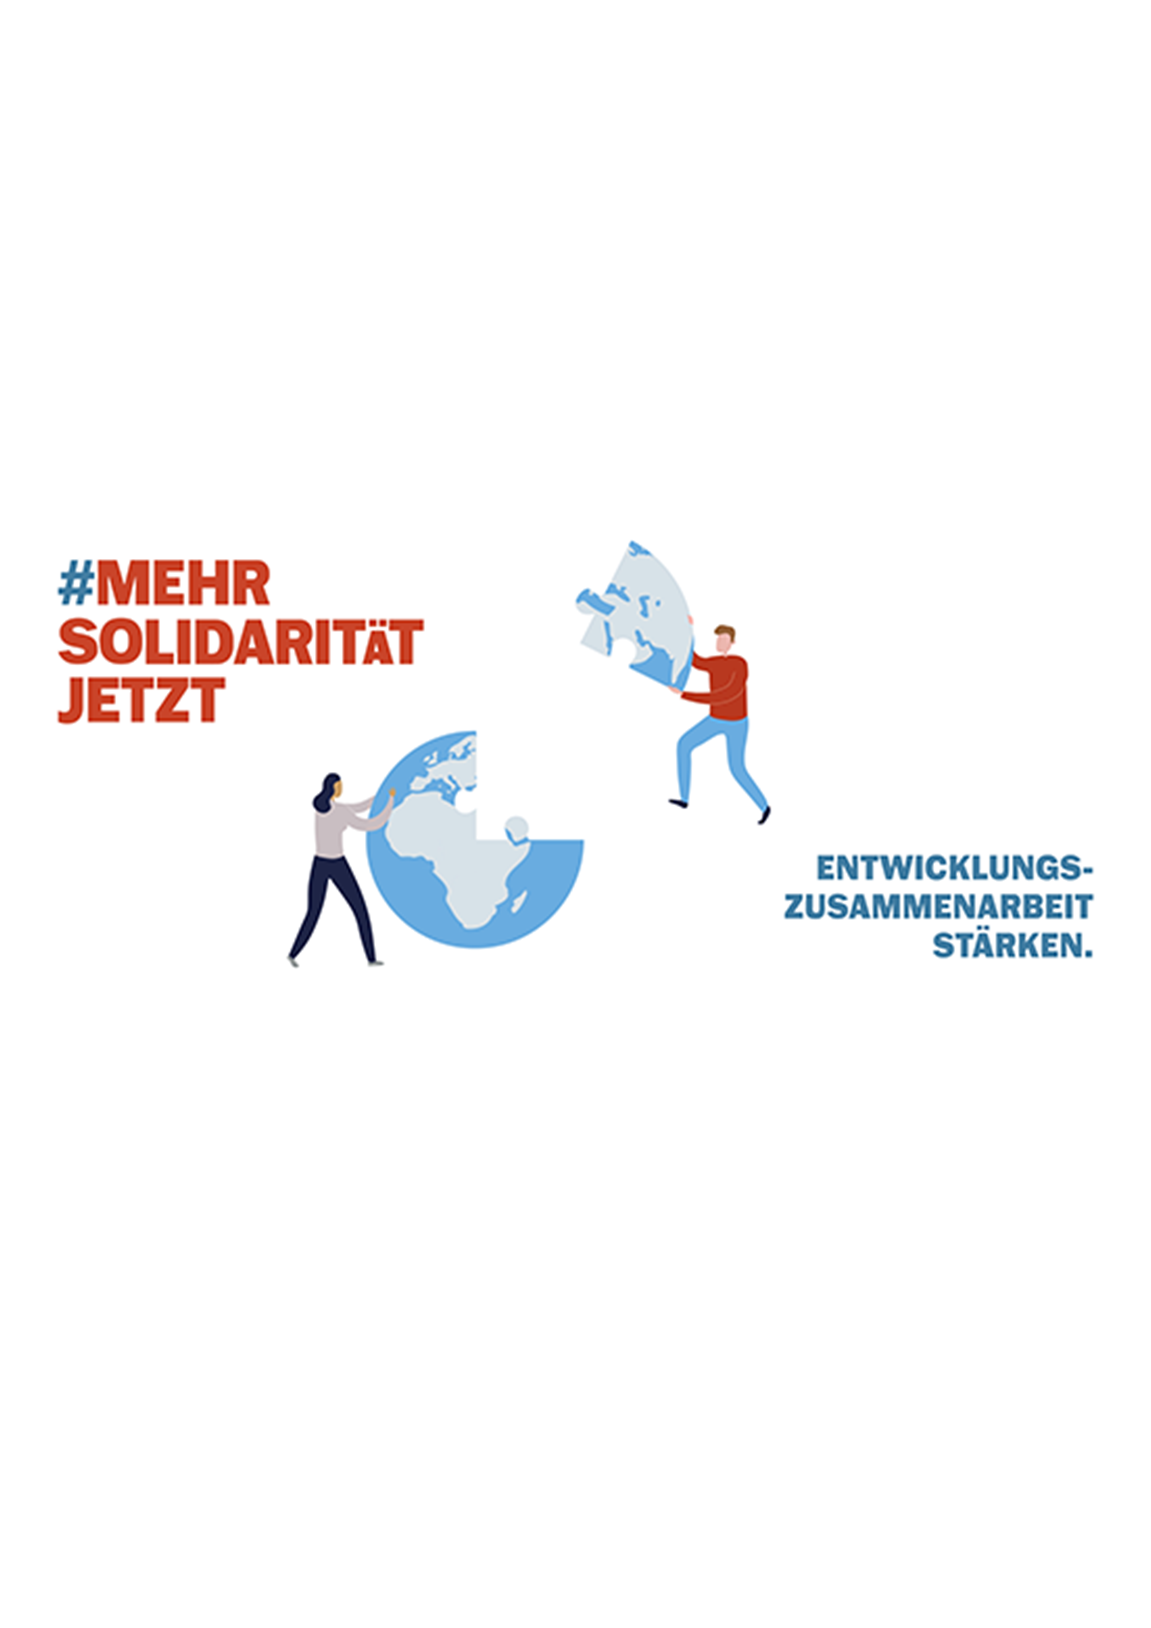 Bild-Text-Kombination für die Kampagne #MehrSolidarität von Alliance Sud.